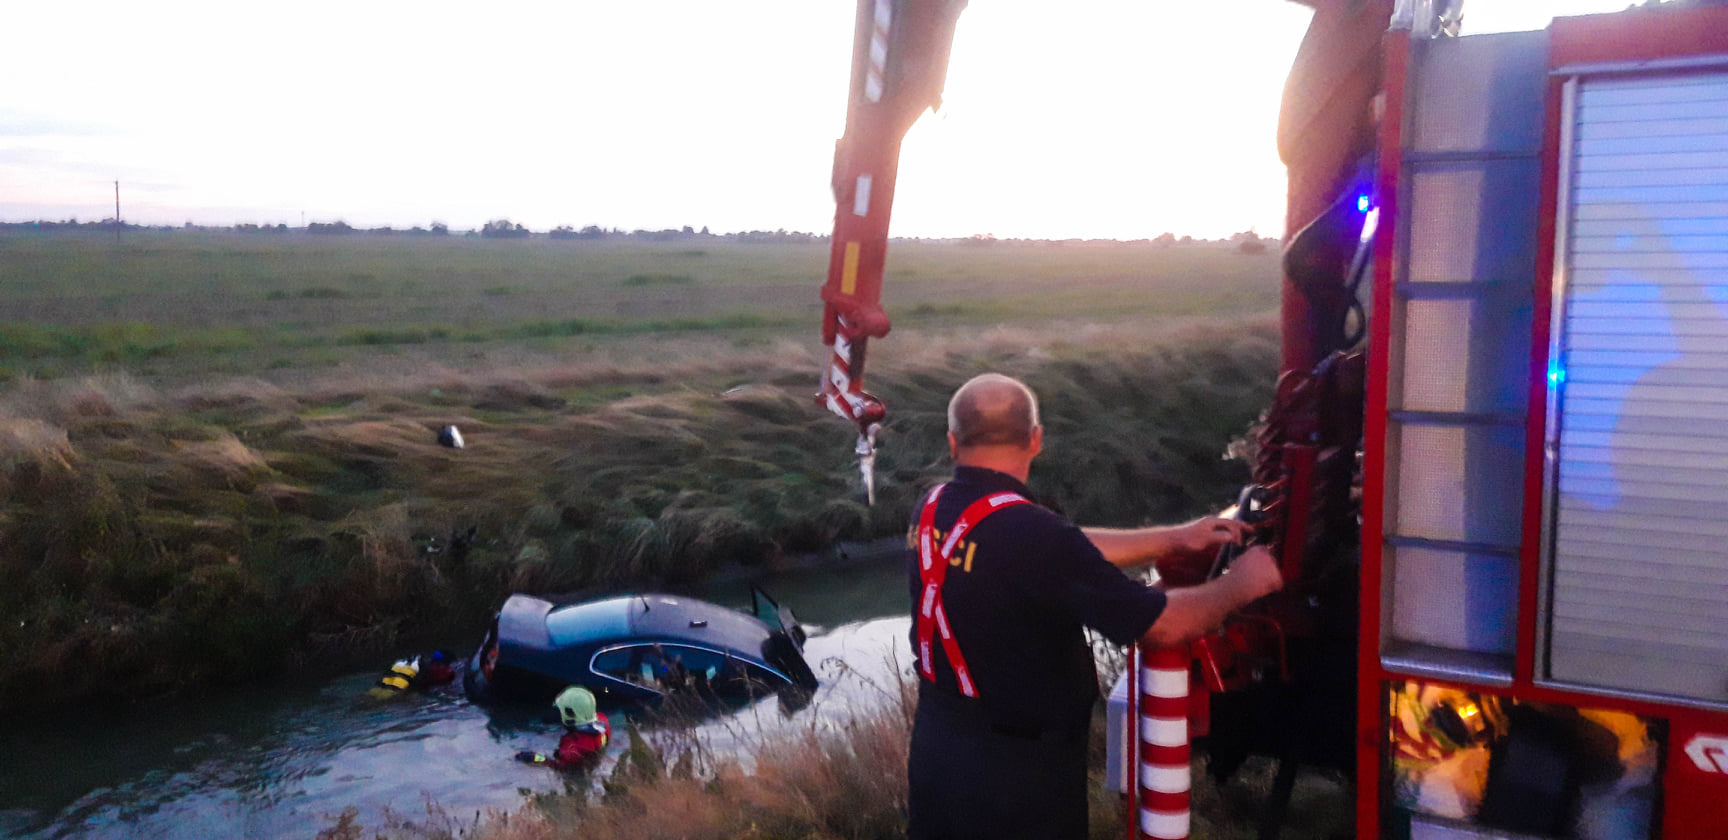 GALÉRIA: Csallóközcsütörtökön tűzoltók húztak ki egy autót a csatornából 